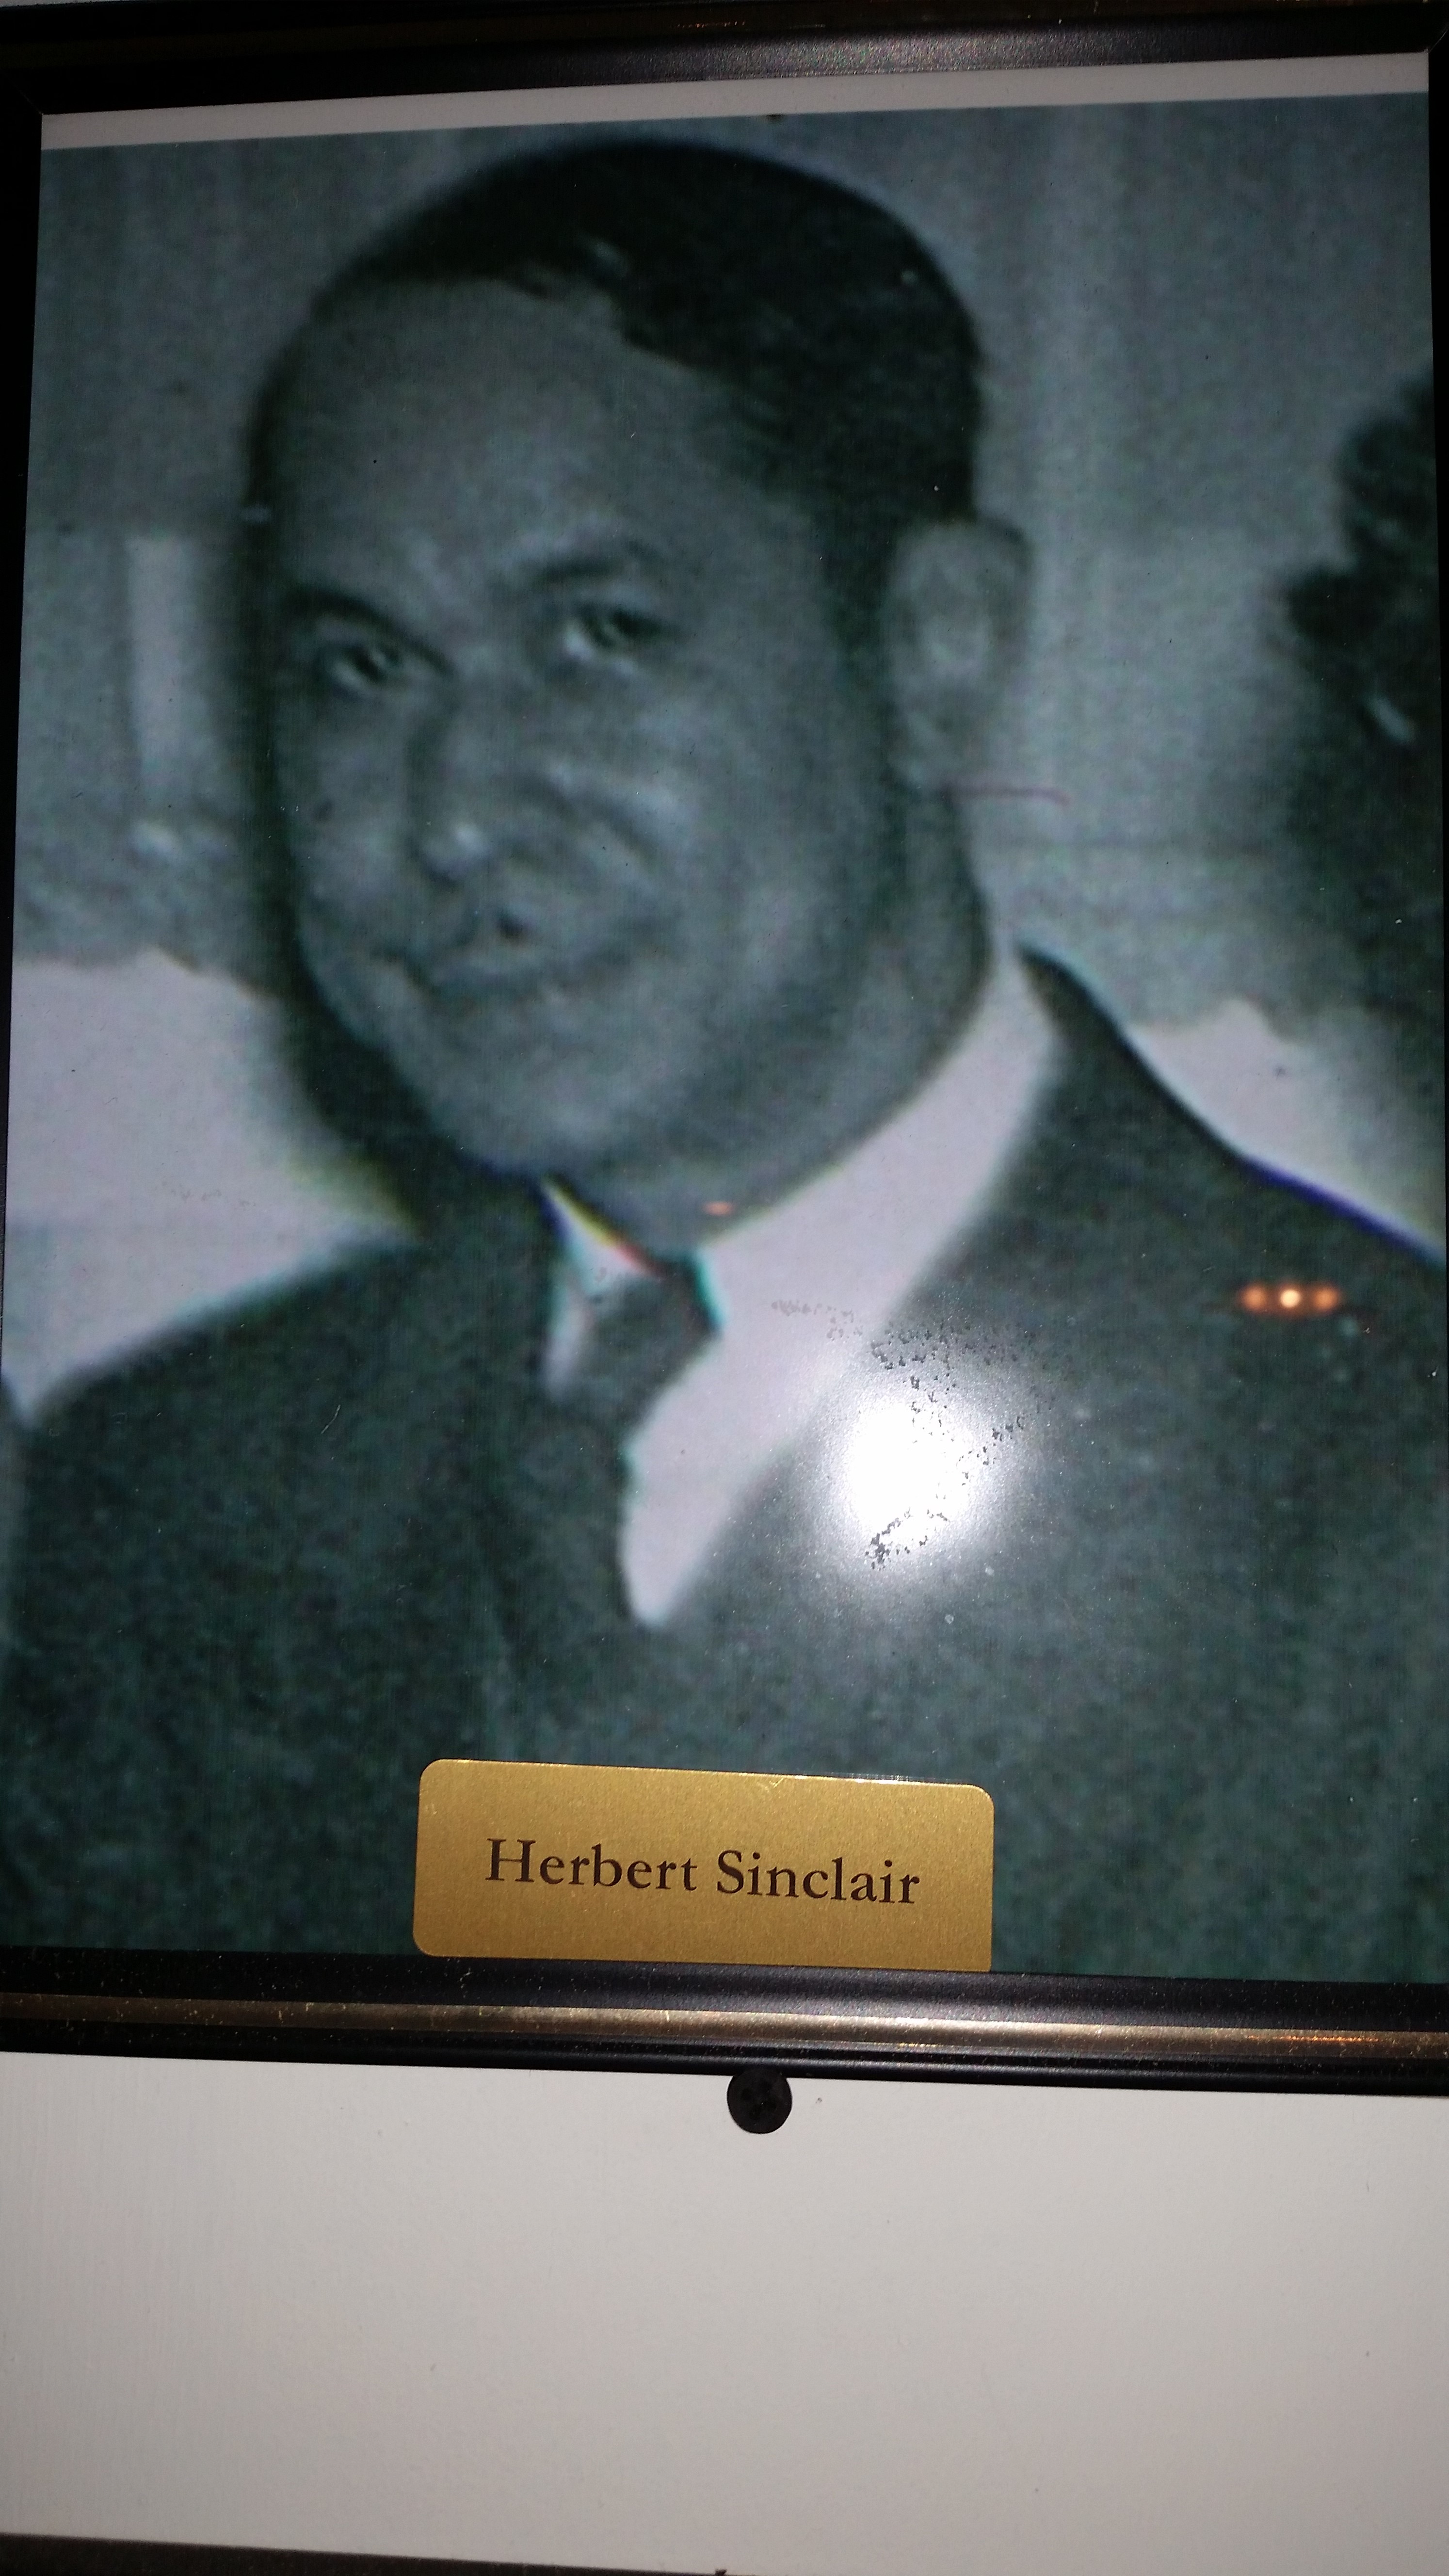 Mr. Herbert Sinclair